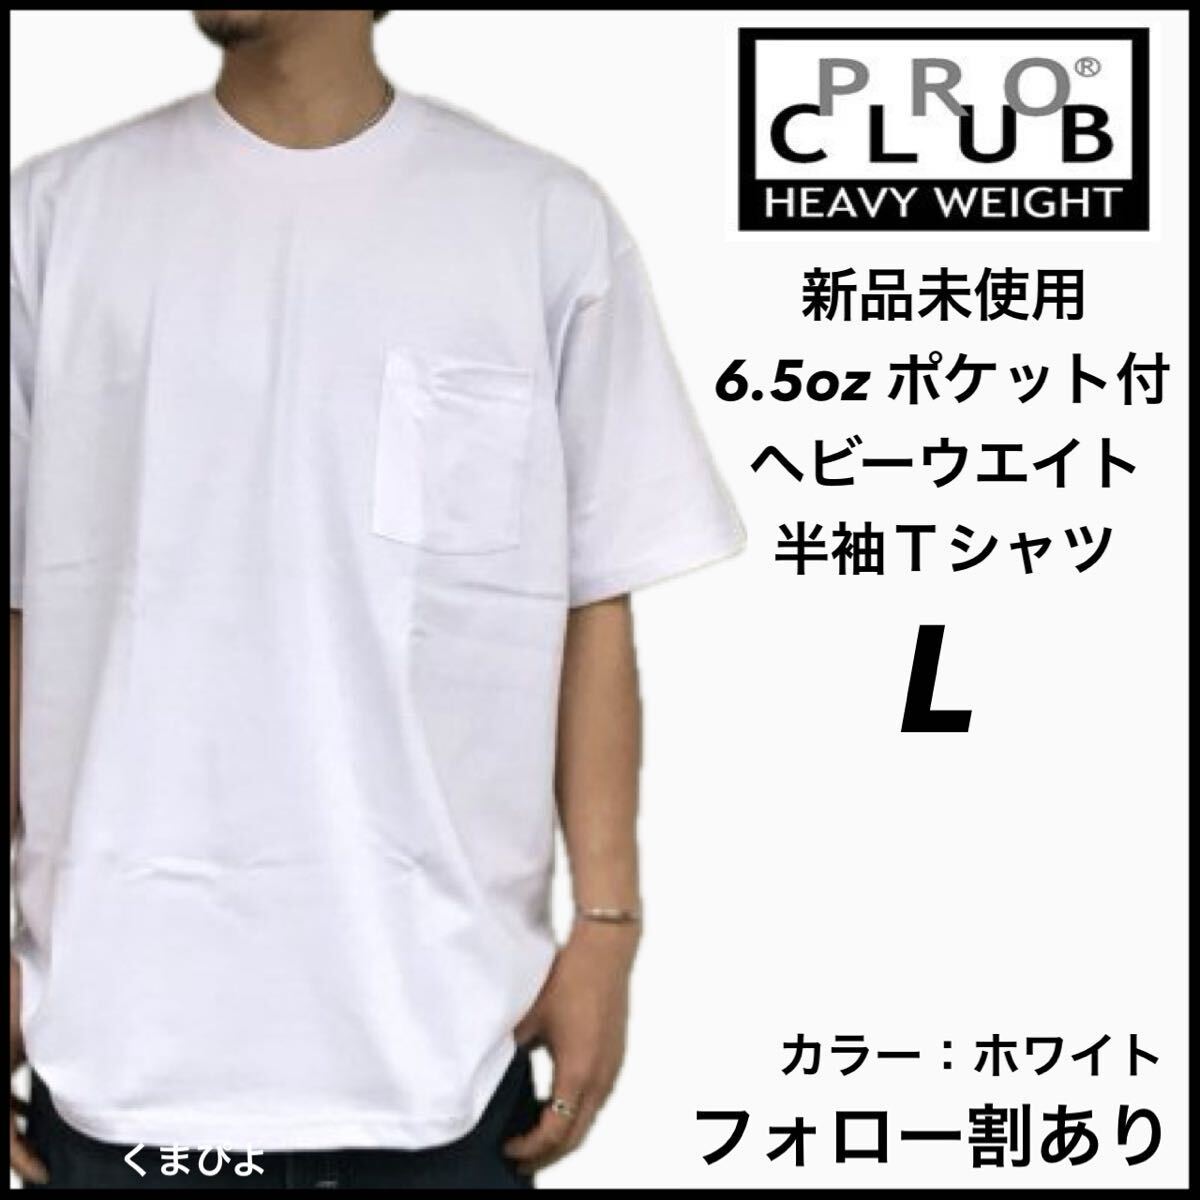 新品未使用 プロクラブ 6.5oz ヘビーウエイト ポケット付き 無地 半袖Tシャツ 白 ホワイト Lサイズ PROCLUB_画像1